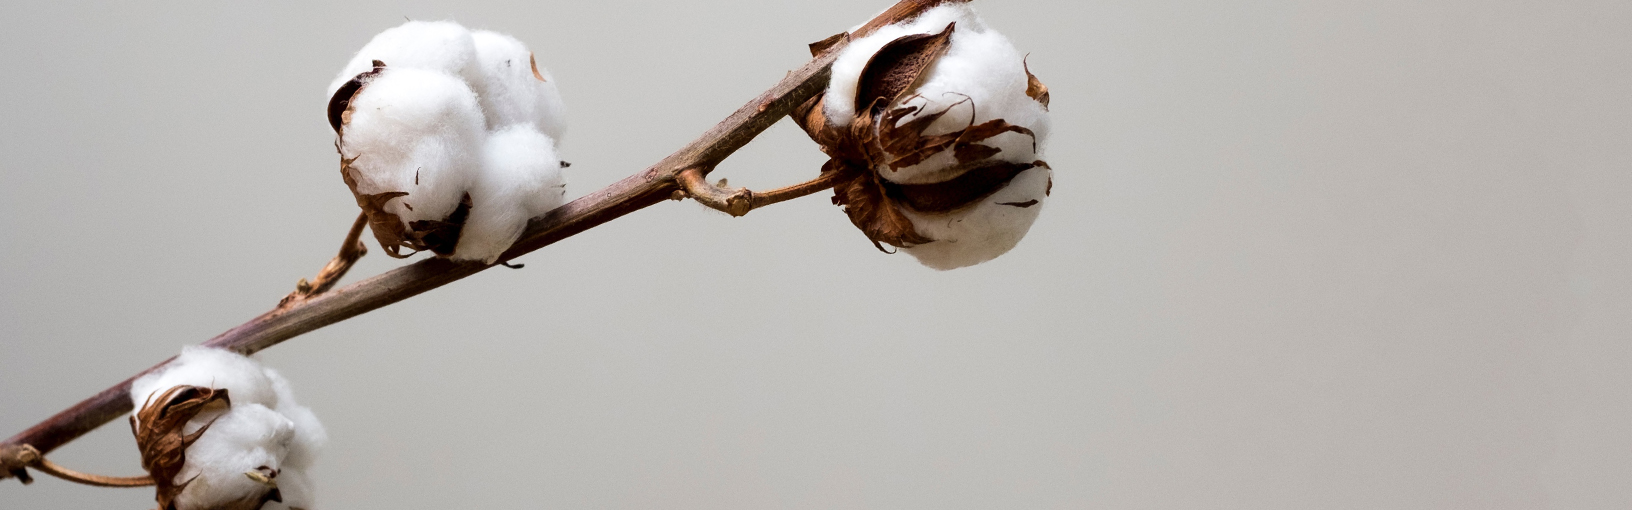 INOVATIVNO, ERGONOMSKO - NAJVIŠI KVALITET Lana Grossa Igle | Kružno pletenje iglice | Dizajnirajte drveni signal